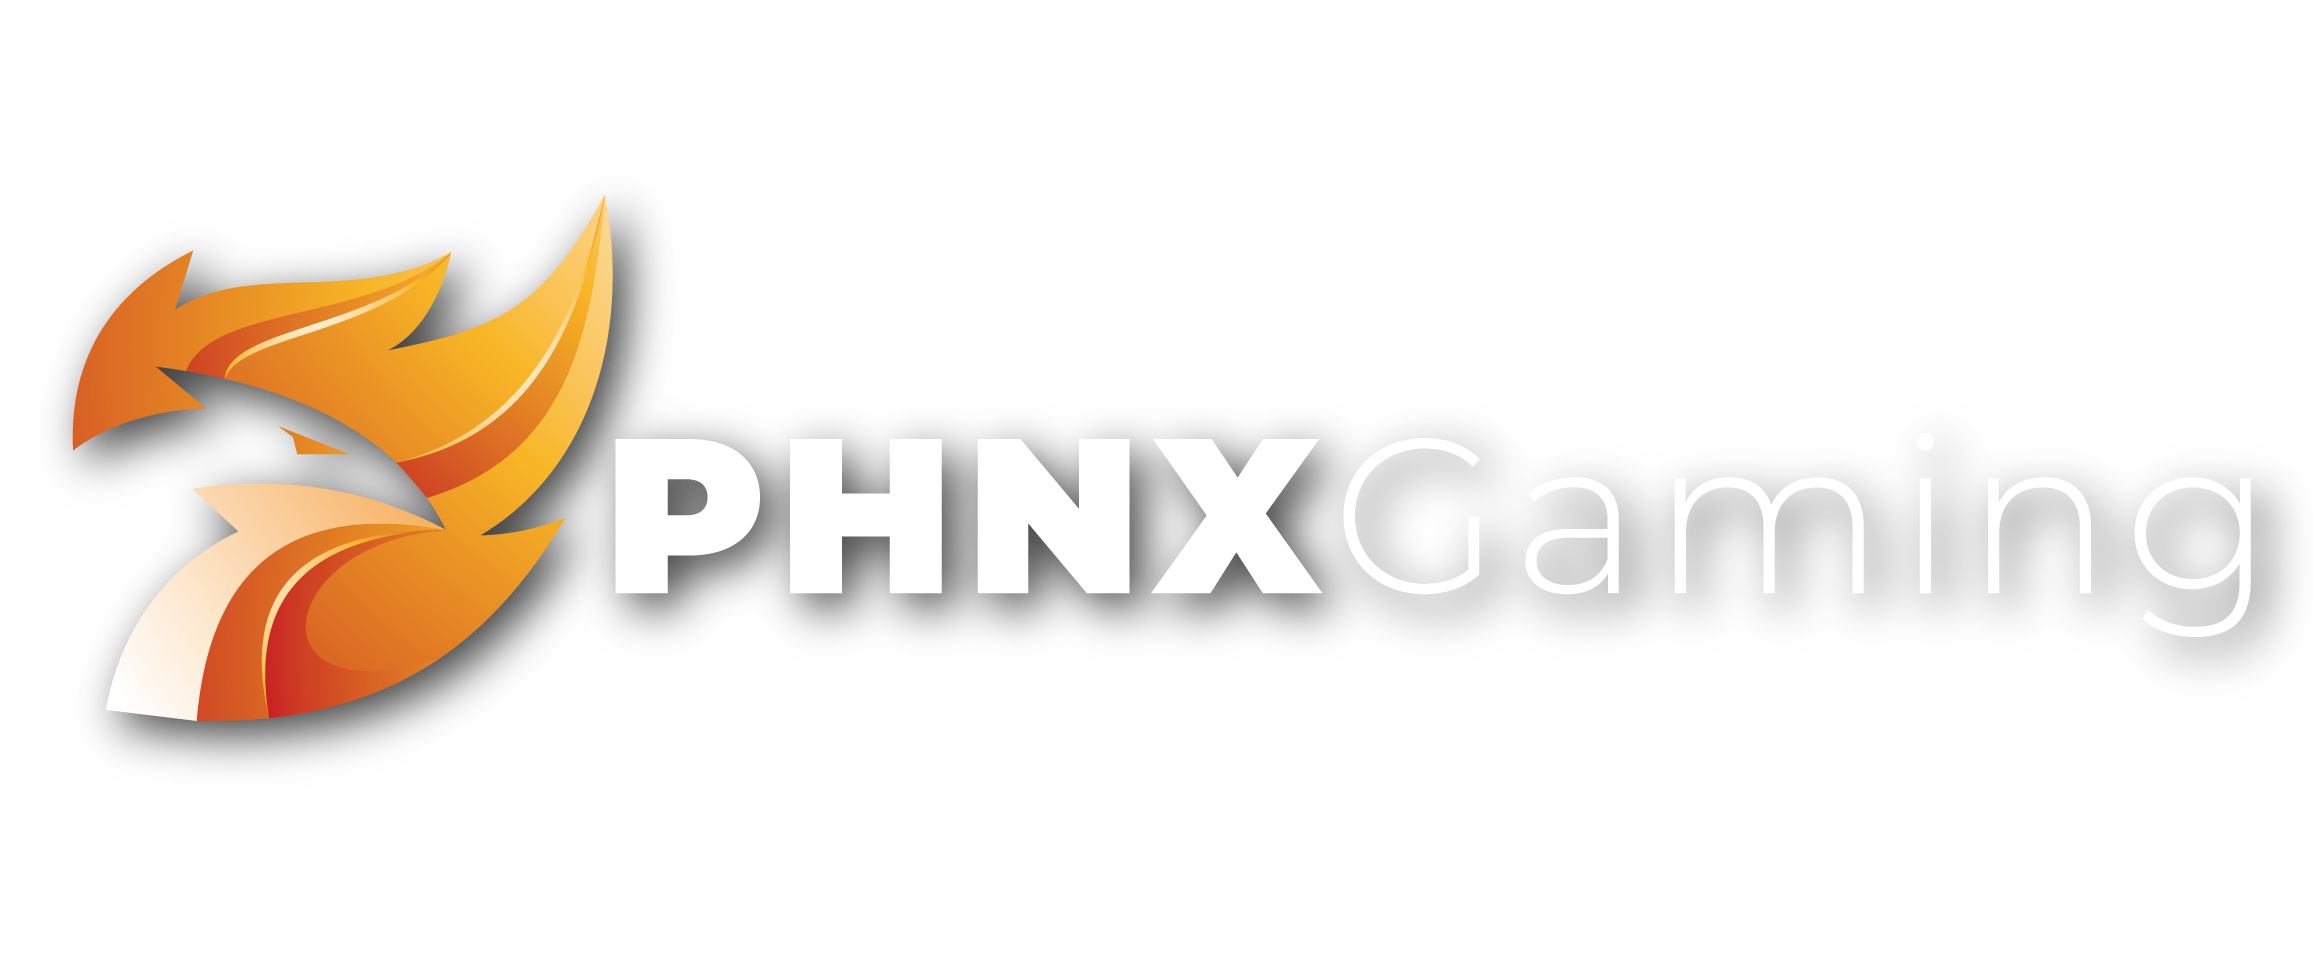 phnxgaming-logo